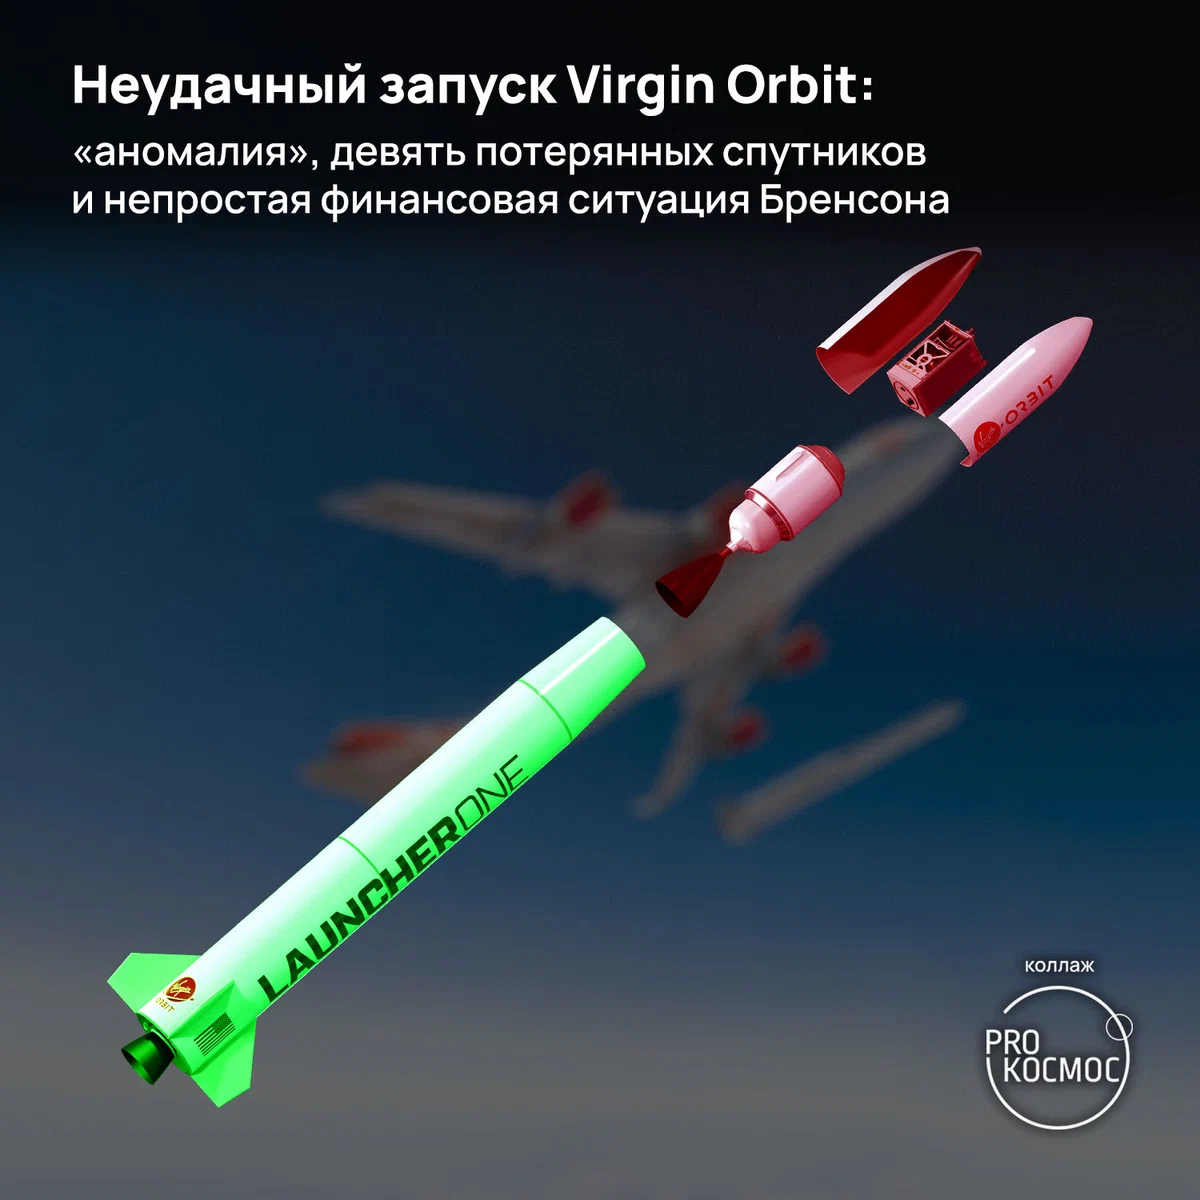 Неудачный запуск Virgin Orbit:«аномалия», девять потерянных спутников и непростая финансовая ситуация Бренсона height=1200px width=1200px